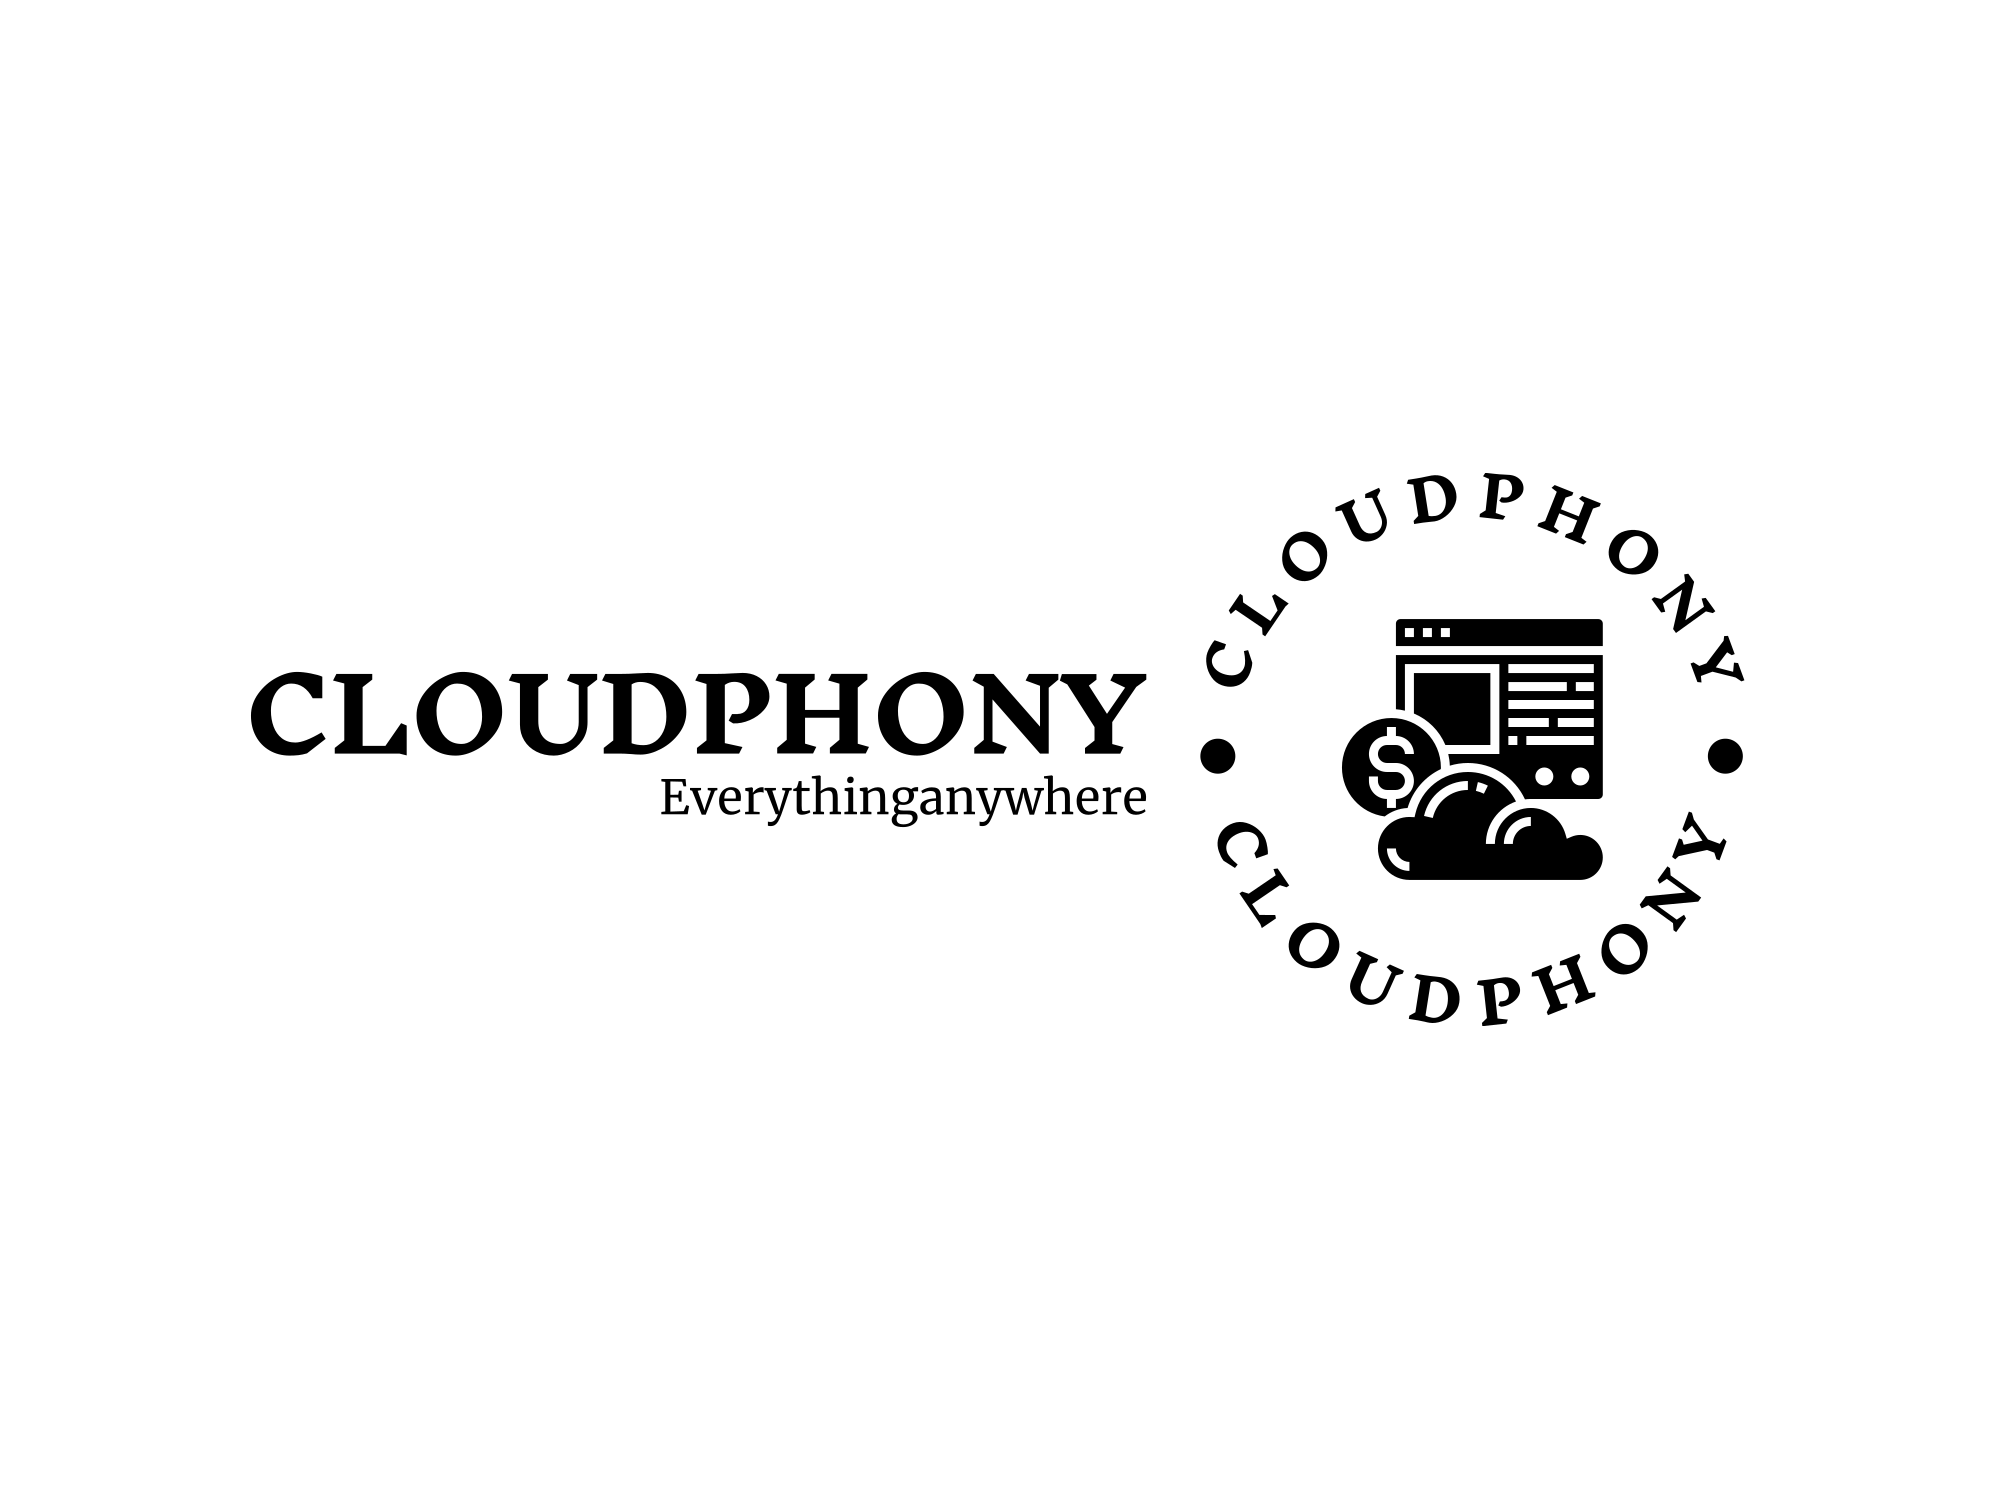 Cloudphony